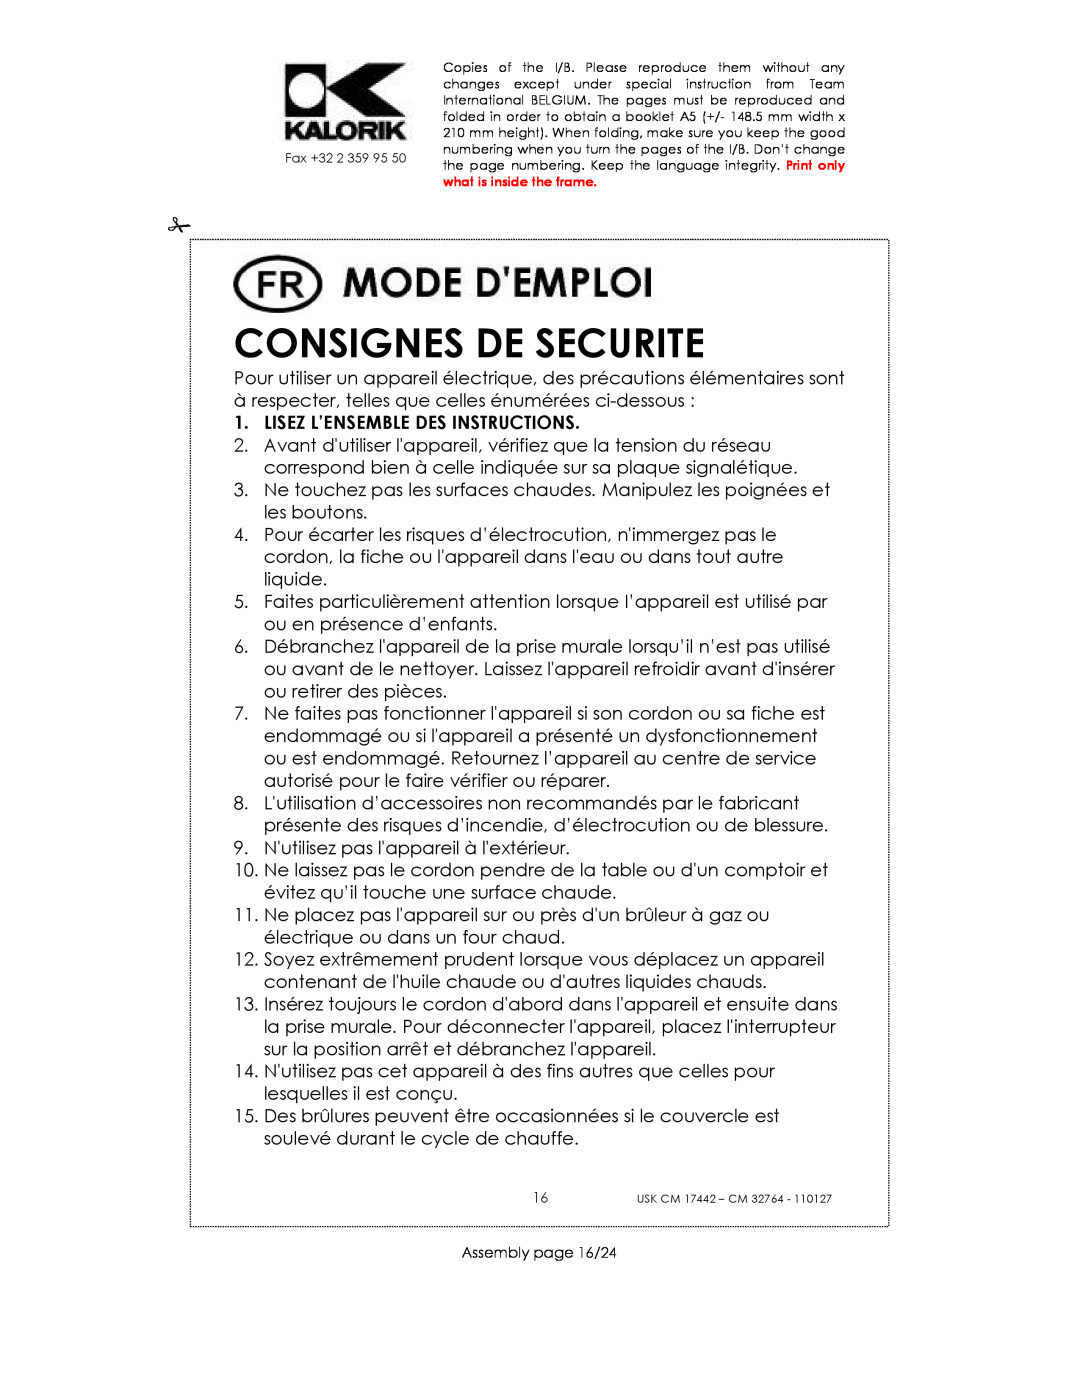 Kalorik USK CM 17442, USK CM 32764 manual Consignes De Securite, Lisez L’Ensemble Des Instructions 